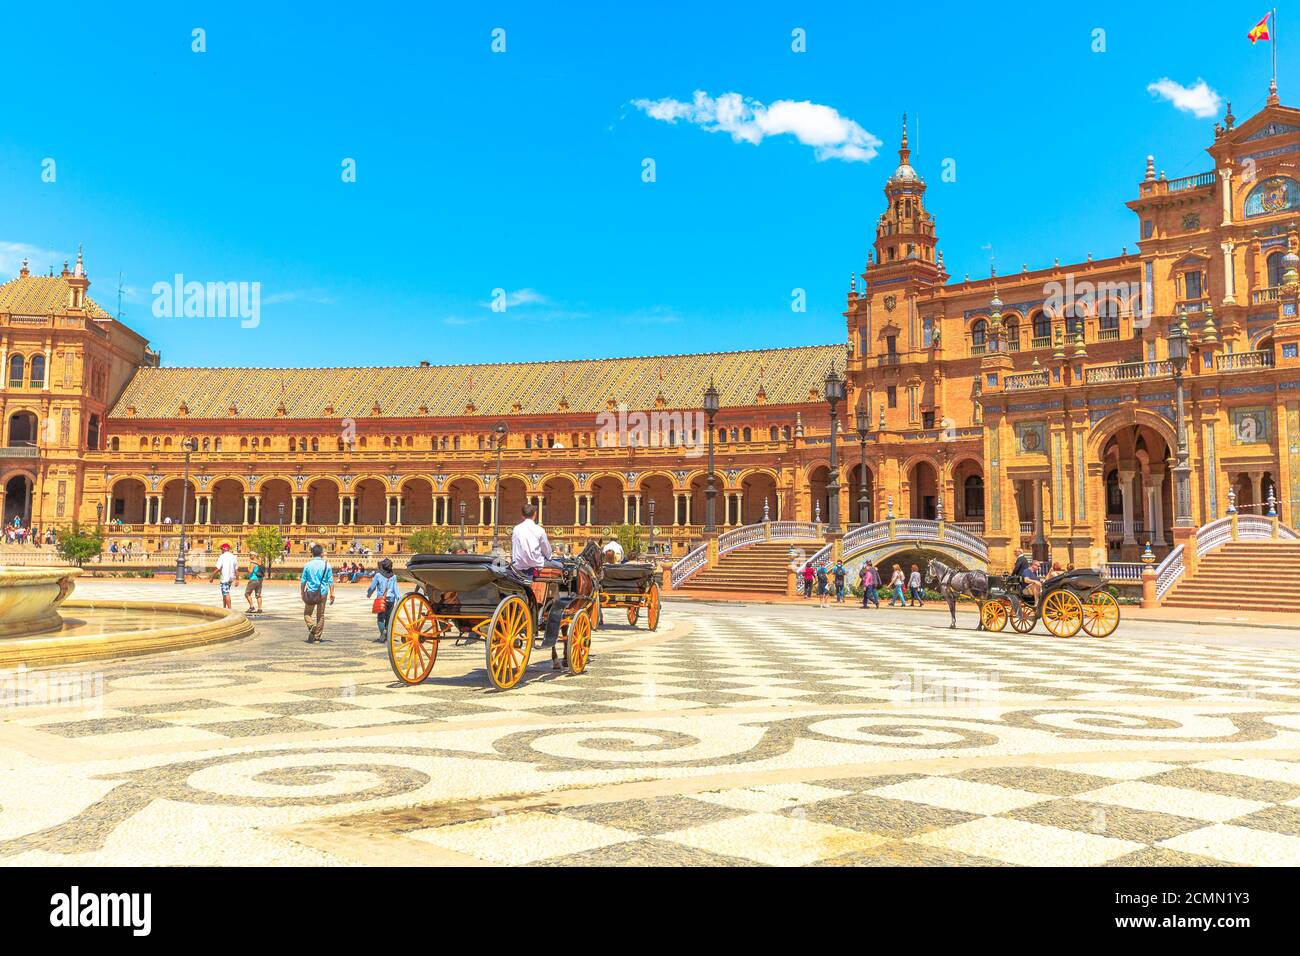 Siviglia, Andalusia, Spagna - 18 aprile 2016: Giro in carrozza a cavallo in Plaza de Espana con edificio centrale con colonne e archi. Piazza della Spagna in un Foto Stock